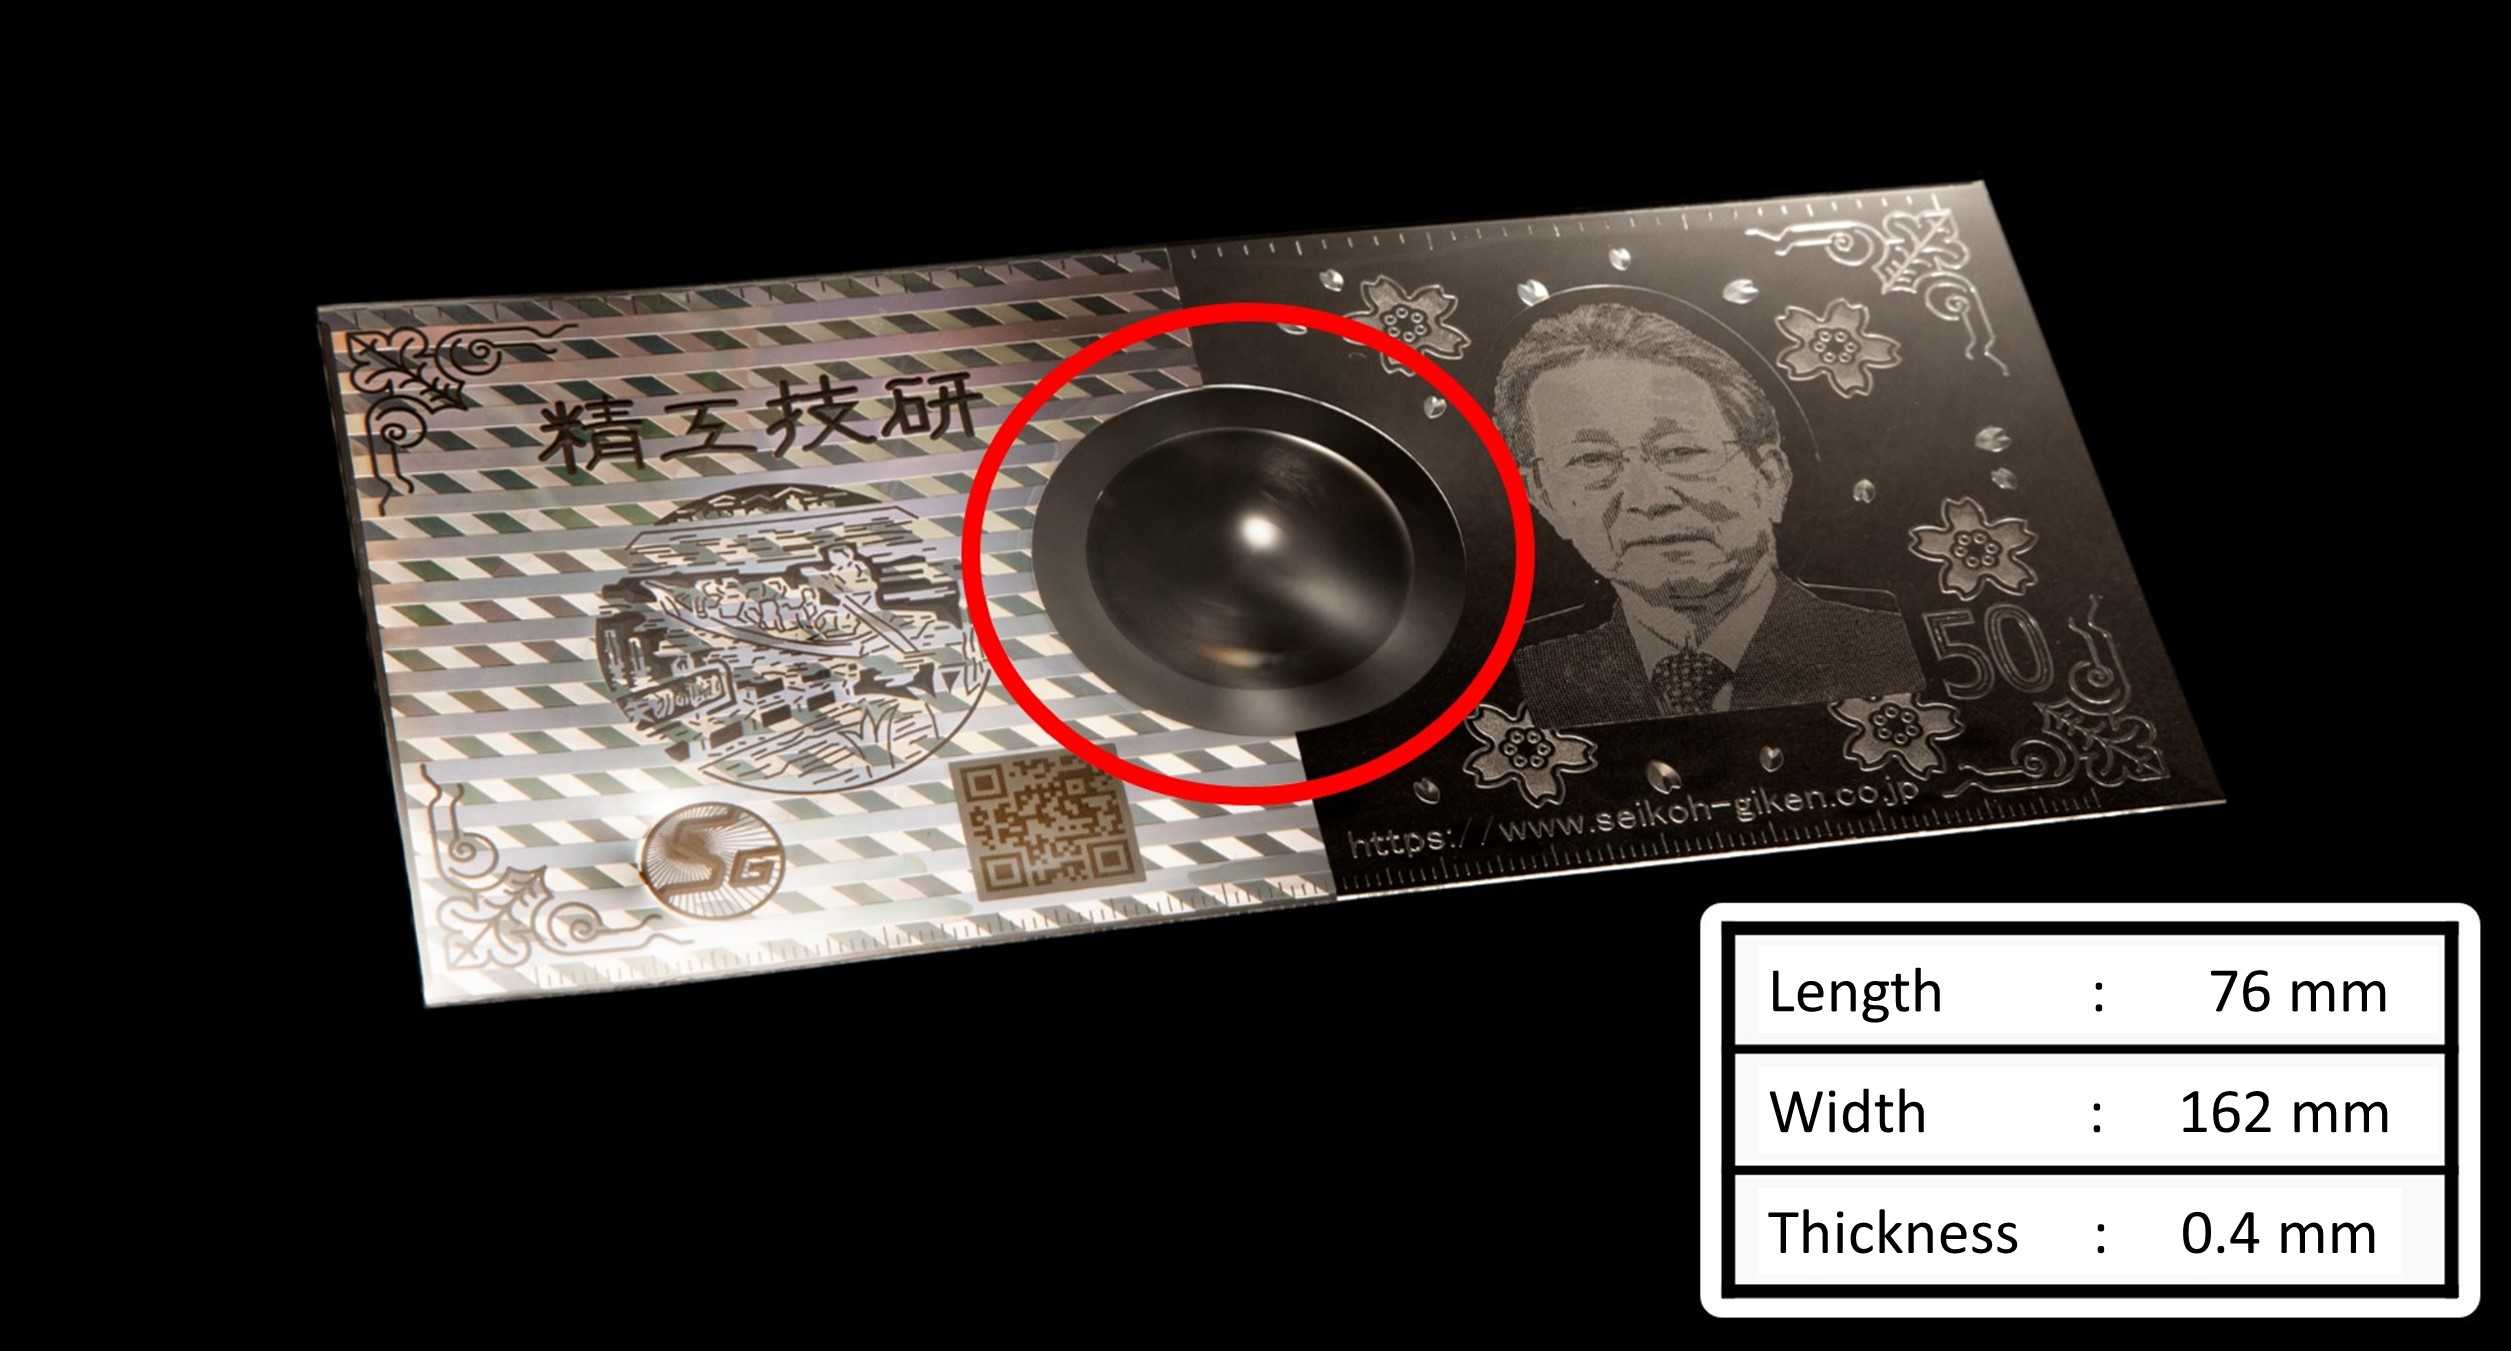 SEIKOH GIKEN 50th Anniversary sample Fresnel lens